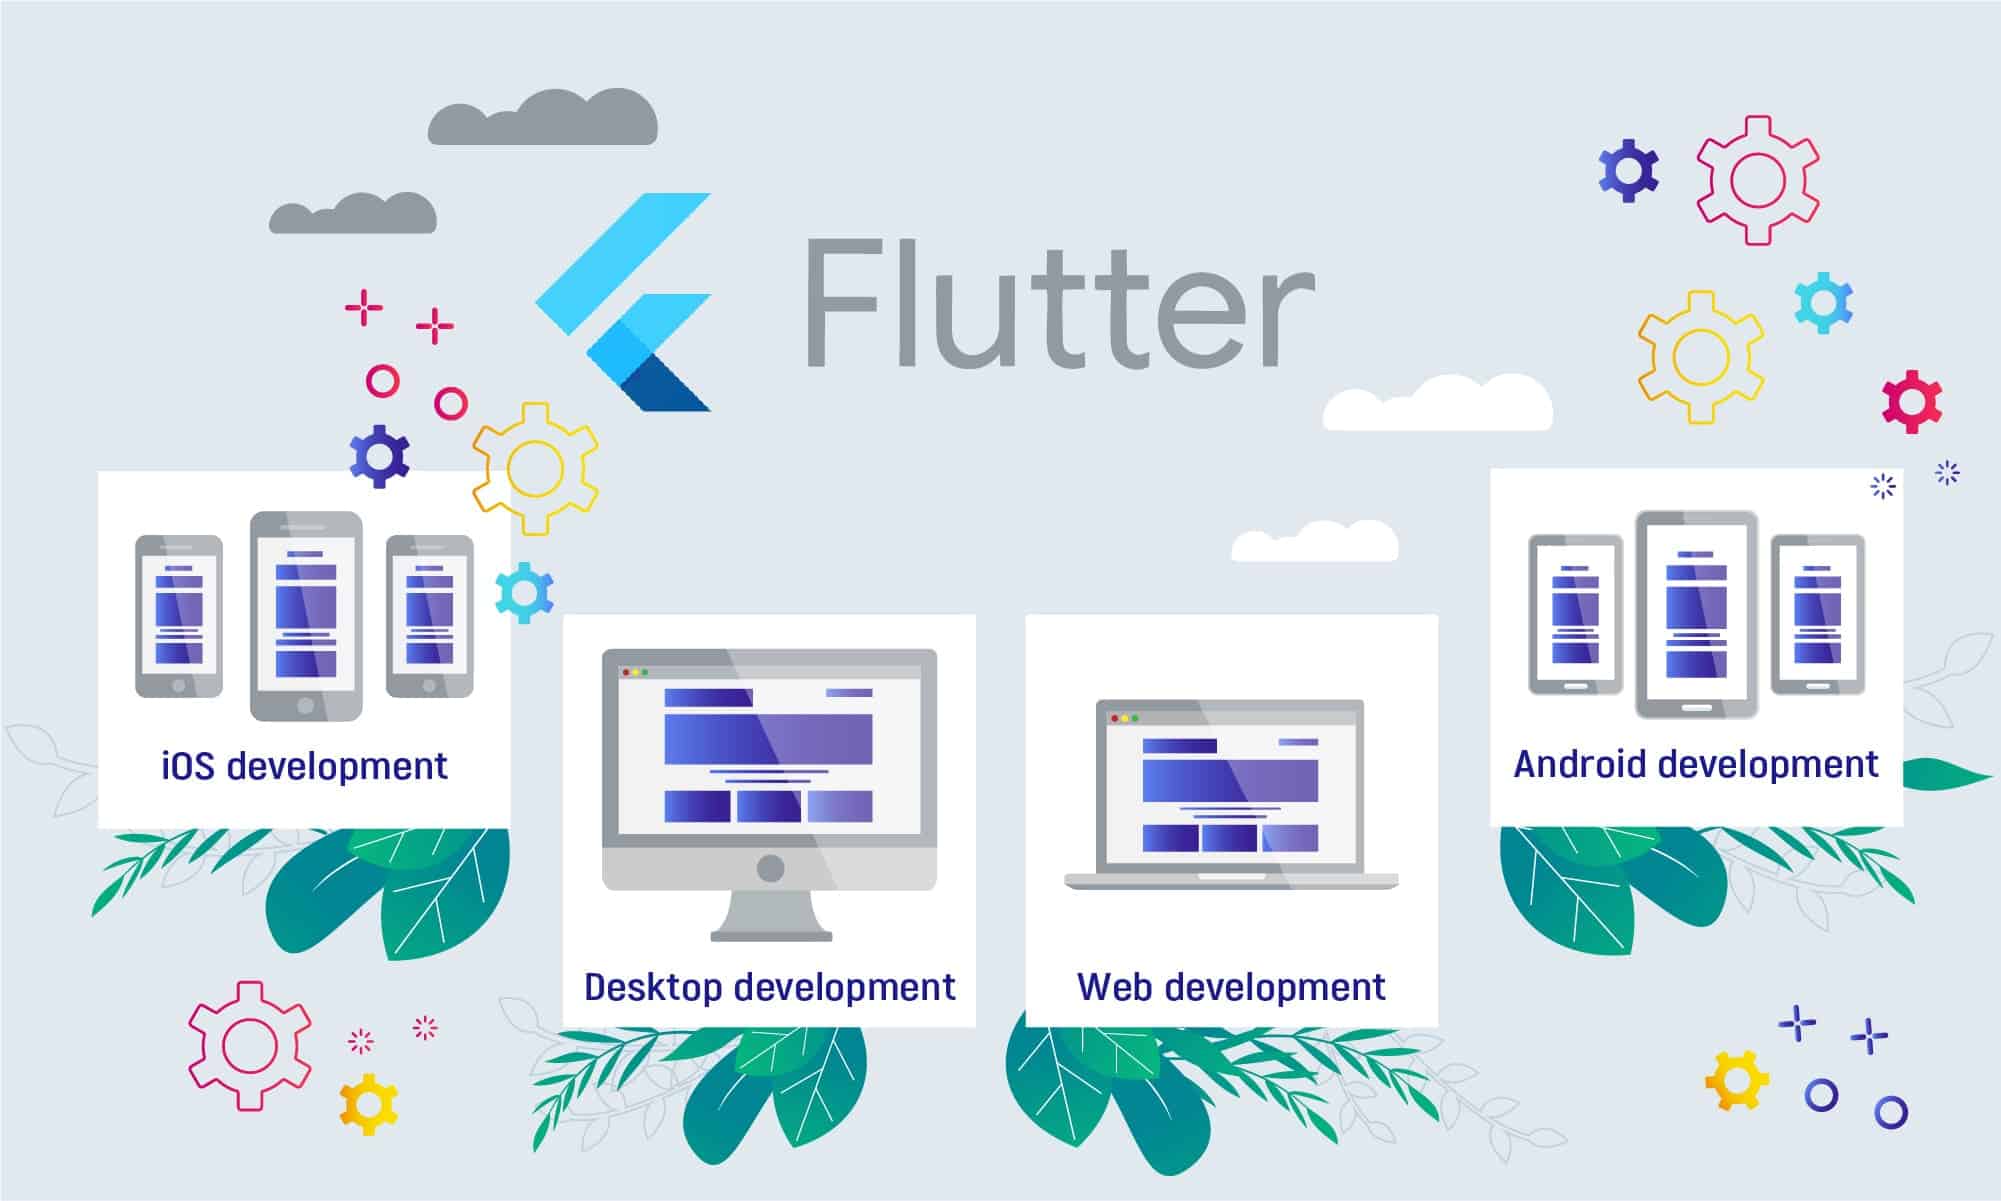 Cross-platform app development as benefit of using Flutter